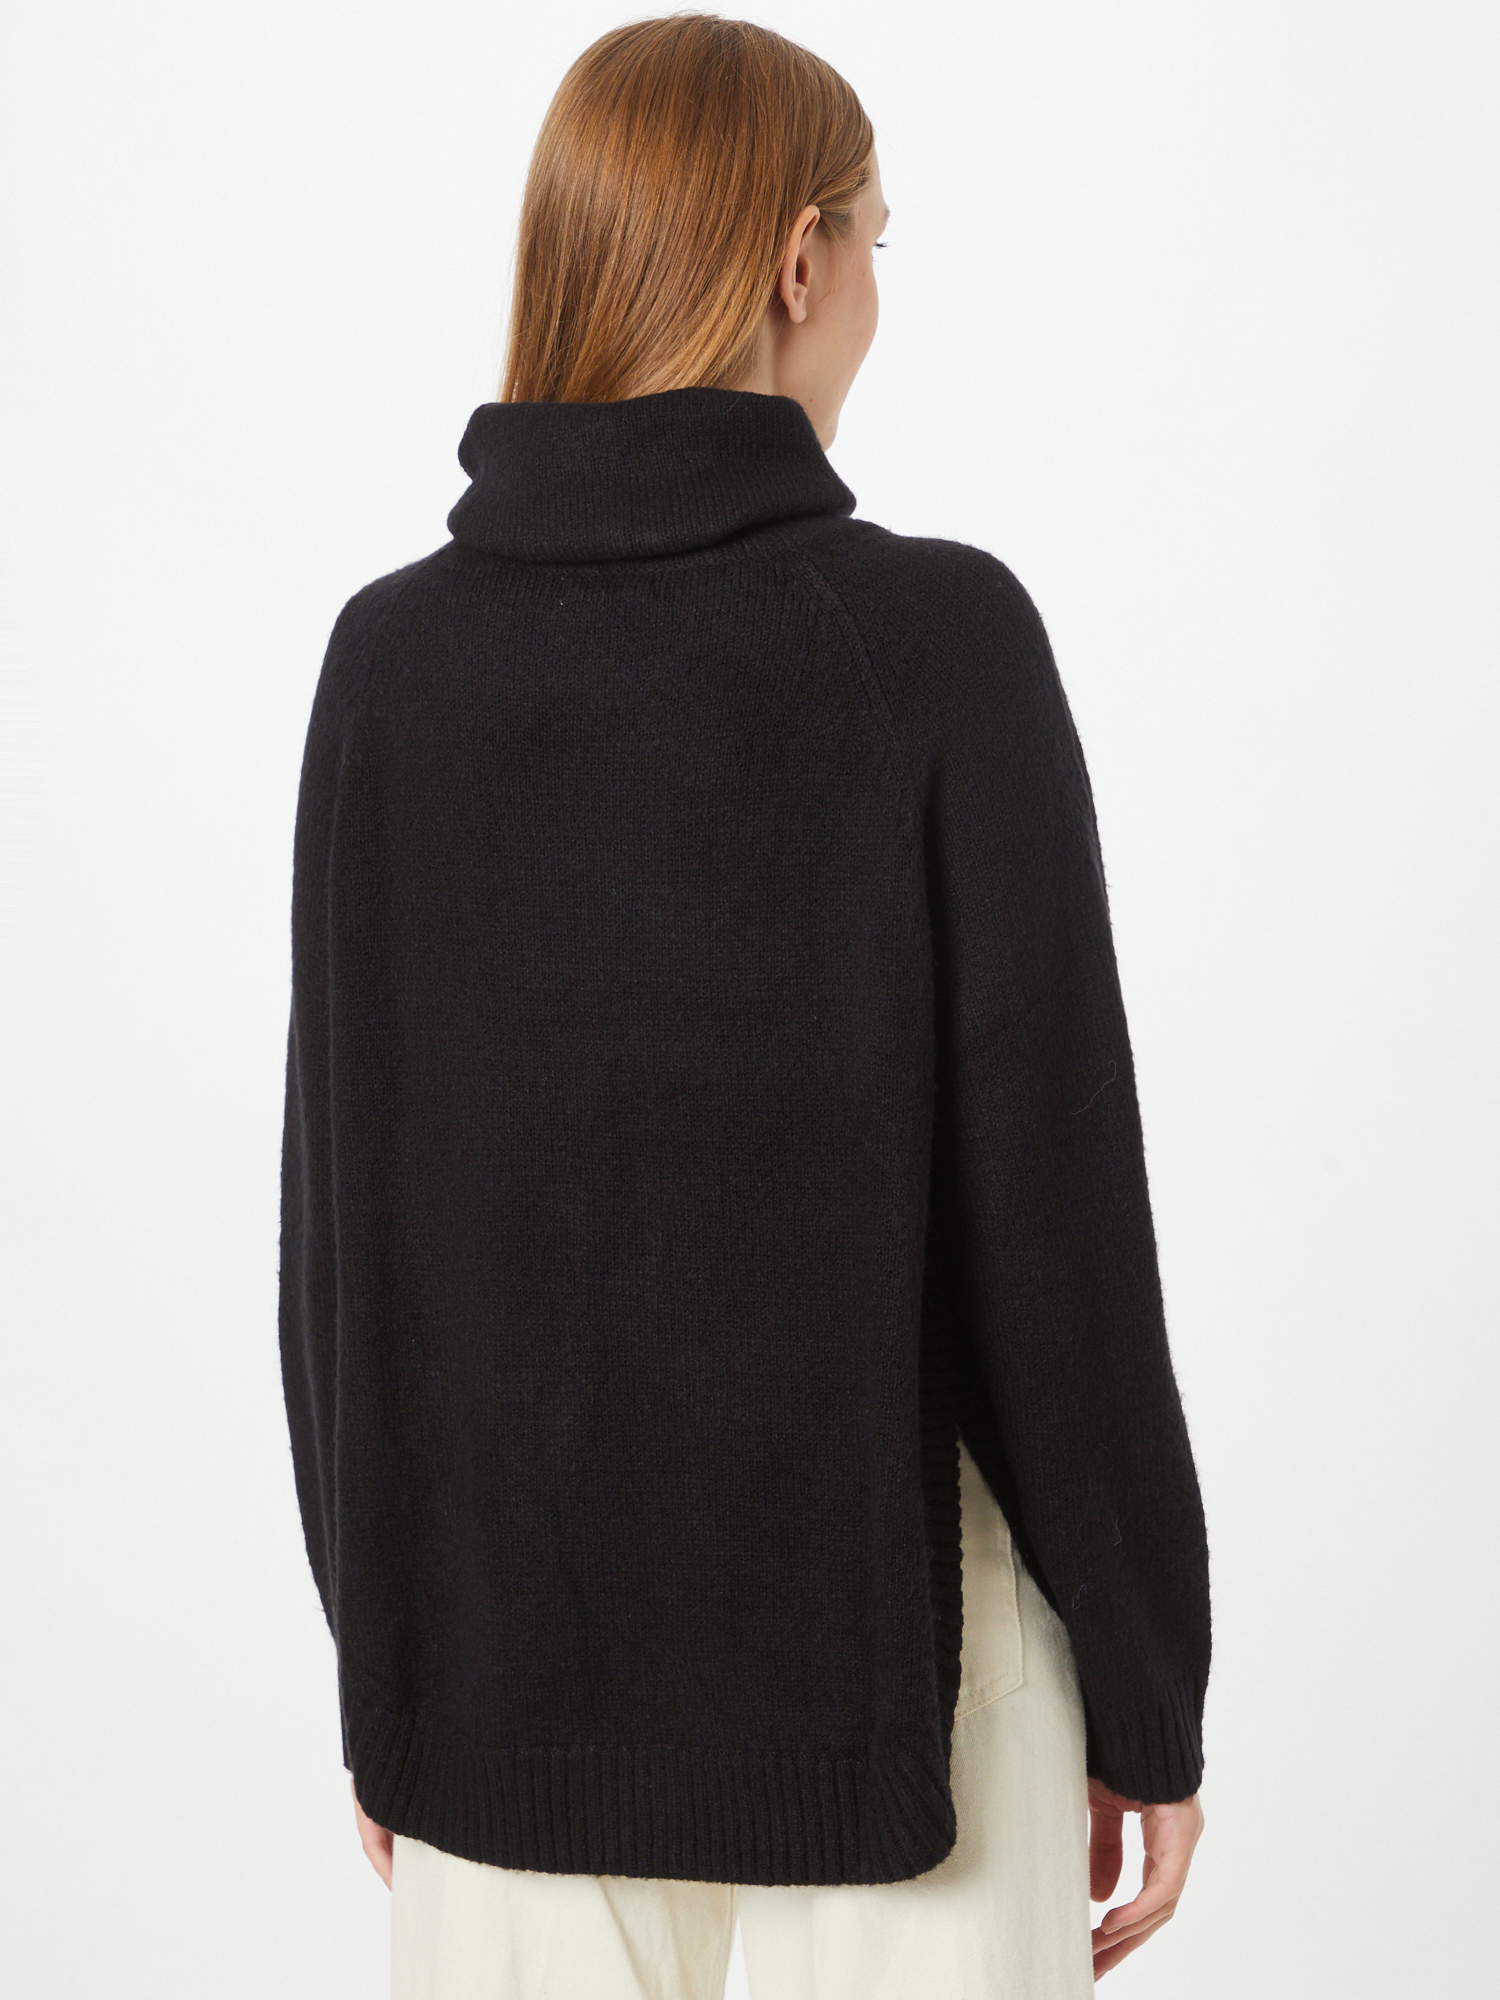 Swetry & dzianina Odzież  Sweter Josefina w kolorze Czarnym 